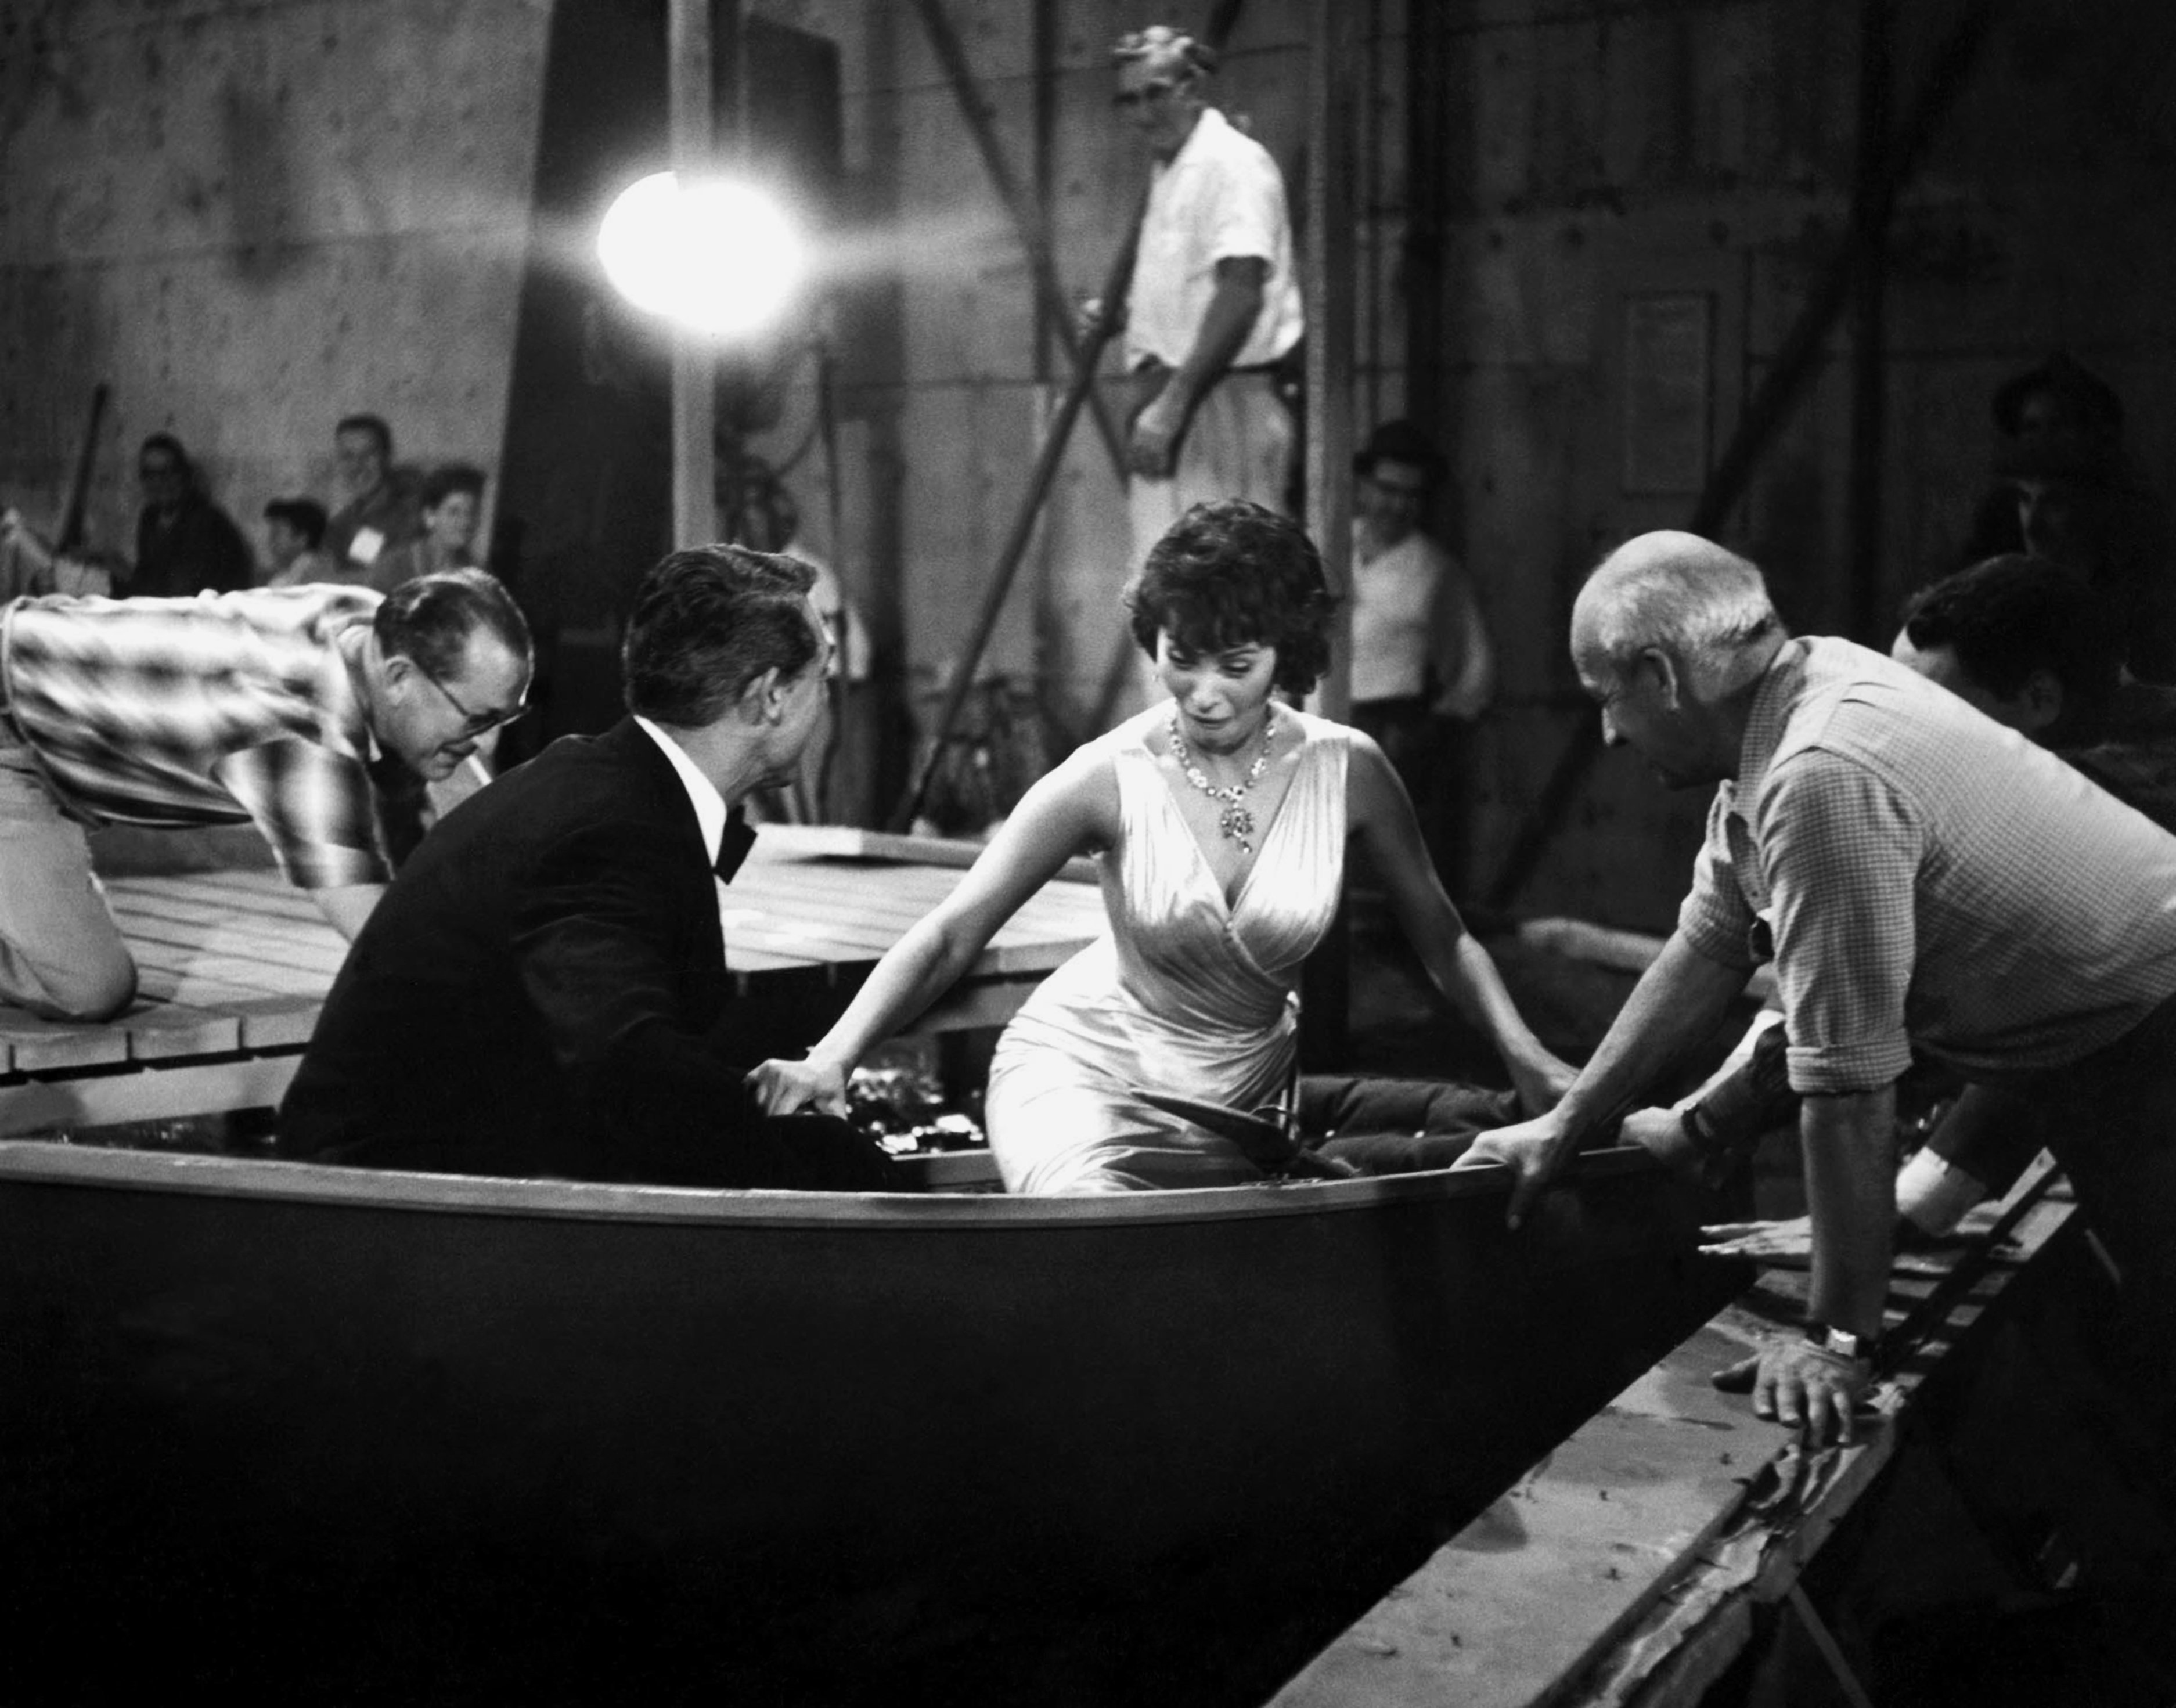 Veteranenstars Cary Grant und Sophia Loren in einer Szene aus dem Film „Houseboat“ im Jahr 1958. | Quelle: Getty Images